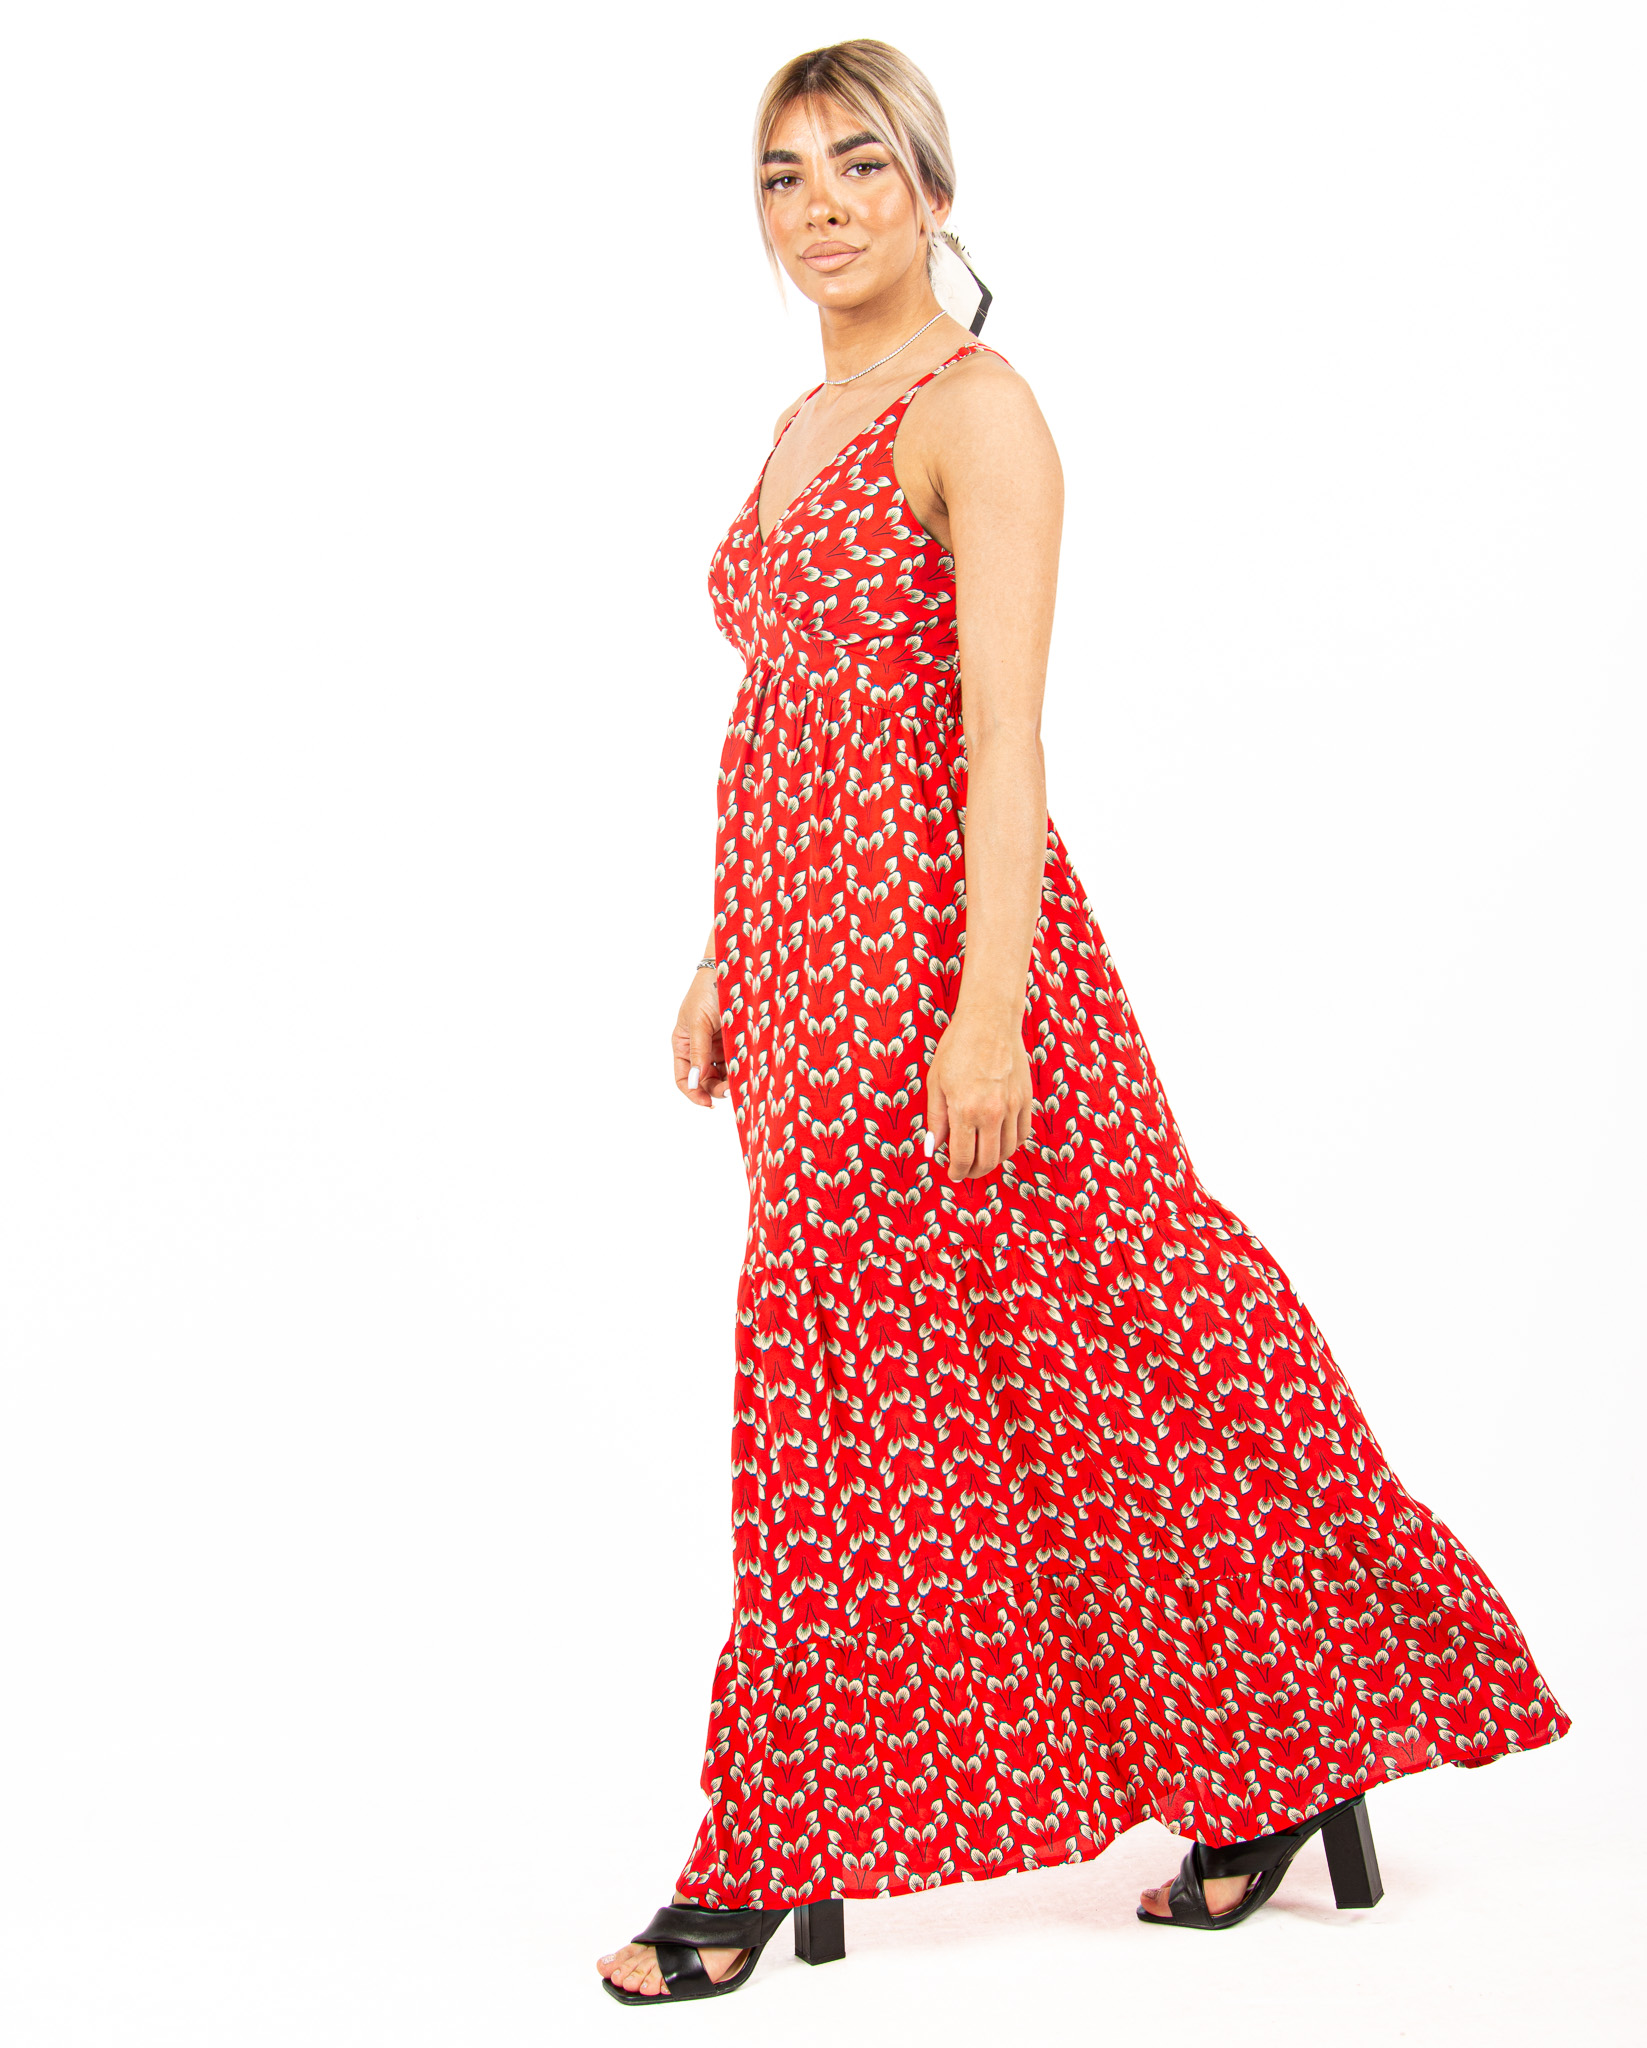 Φόρεμα Floral Κόκκινο | EllenBoutique